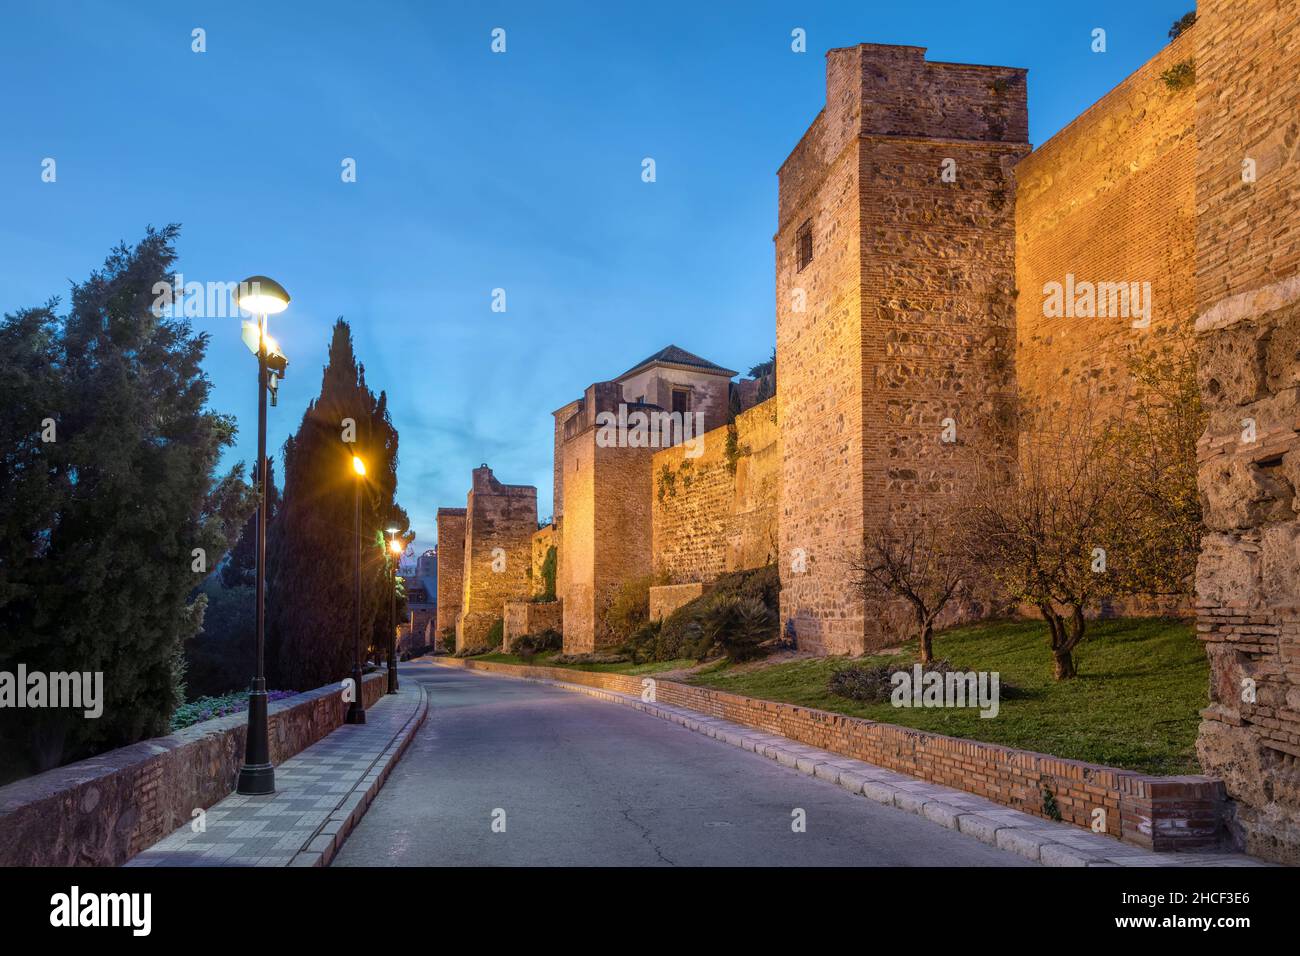 Malaga, Espagne.Vue sur le mur illuminé de la forteresse Alcazaba - citadelle mauresque médiévale Banque D'Images